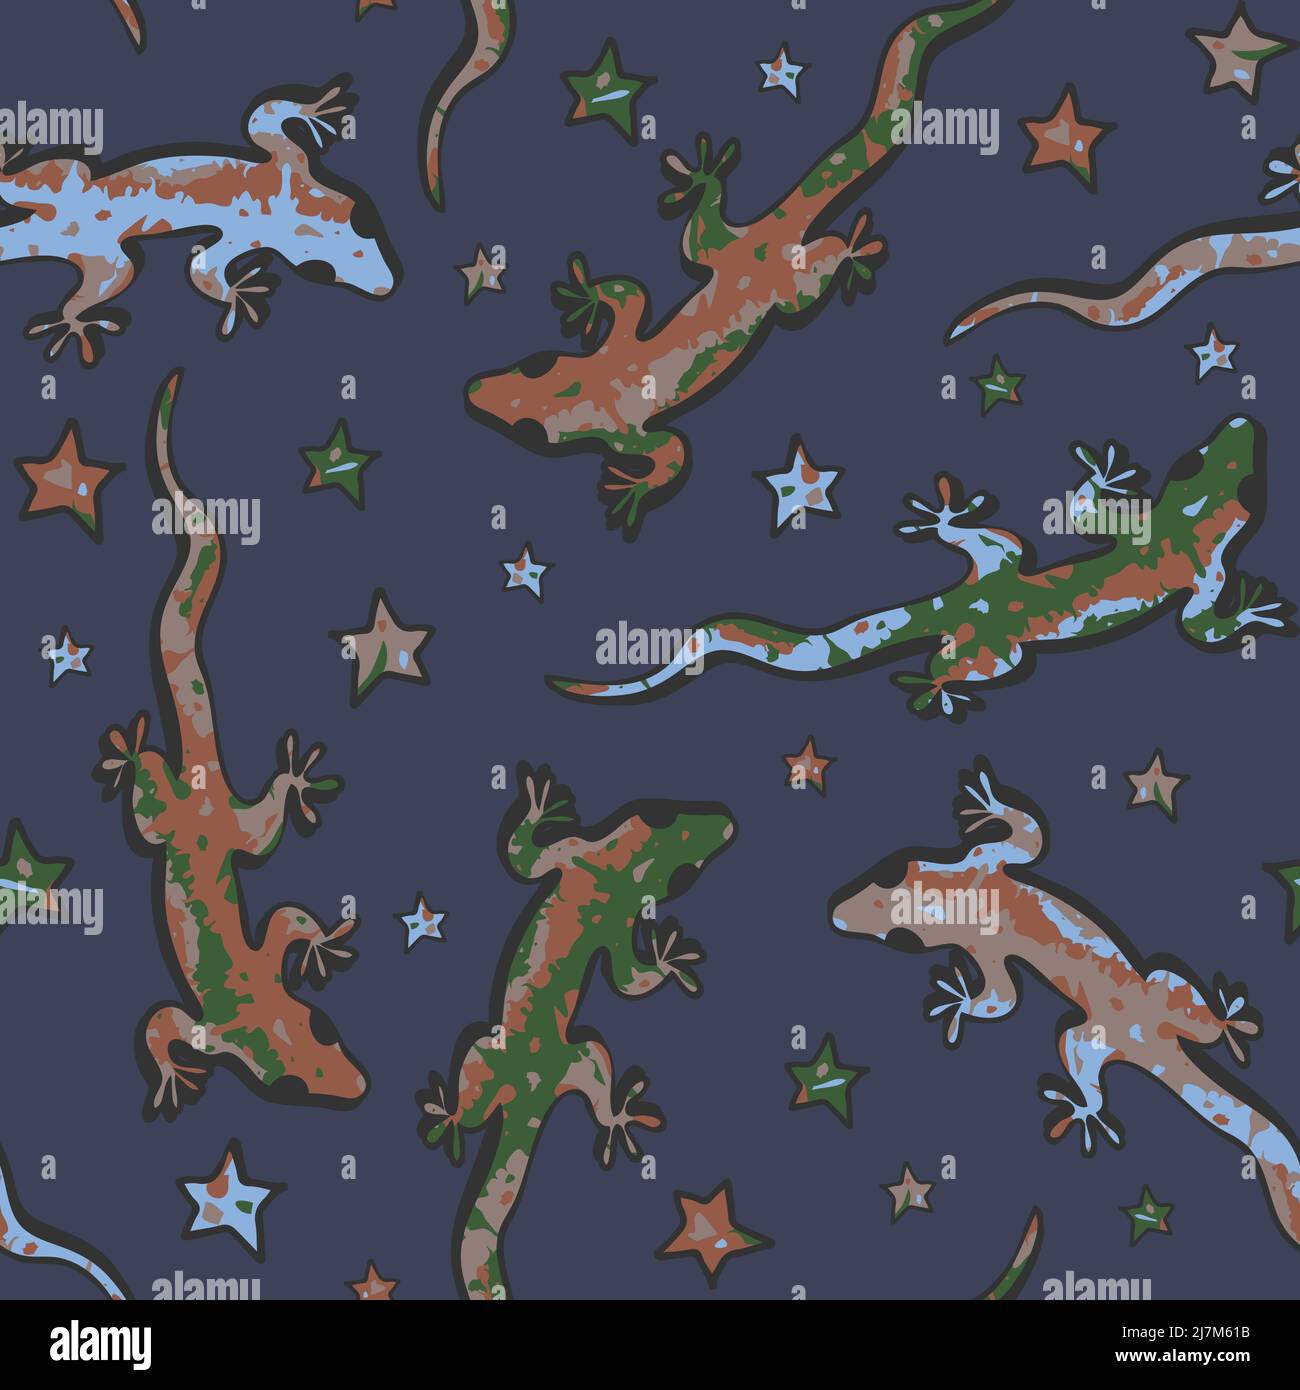 Nahtloses Vektor-Muster mit bunten Geckos auf blauem Hintergrund. Künstlerisches Tiertapete-Design mit Eidechsen und Sternen. Stock Vektor